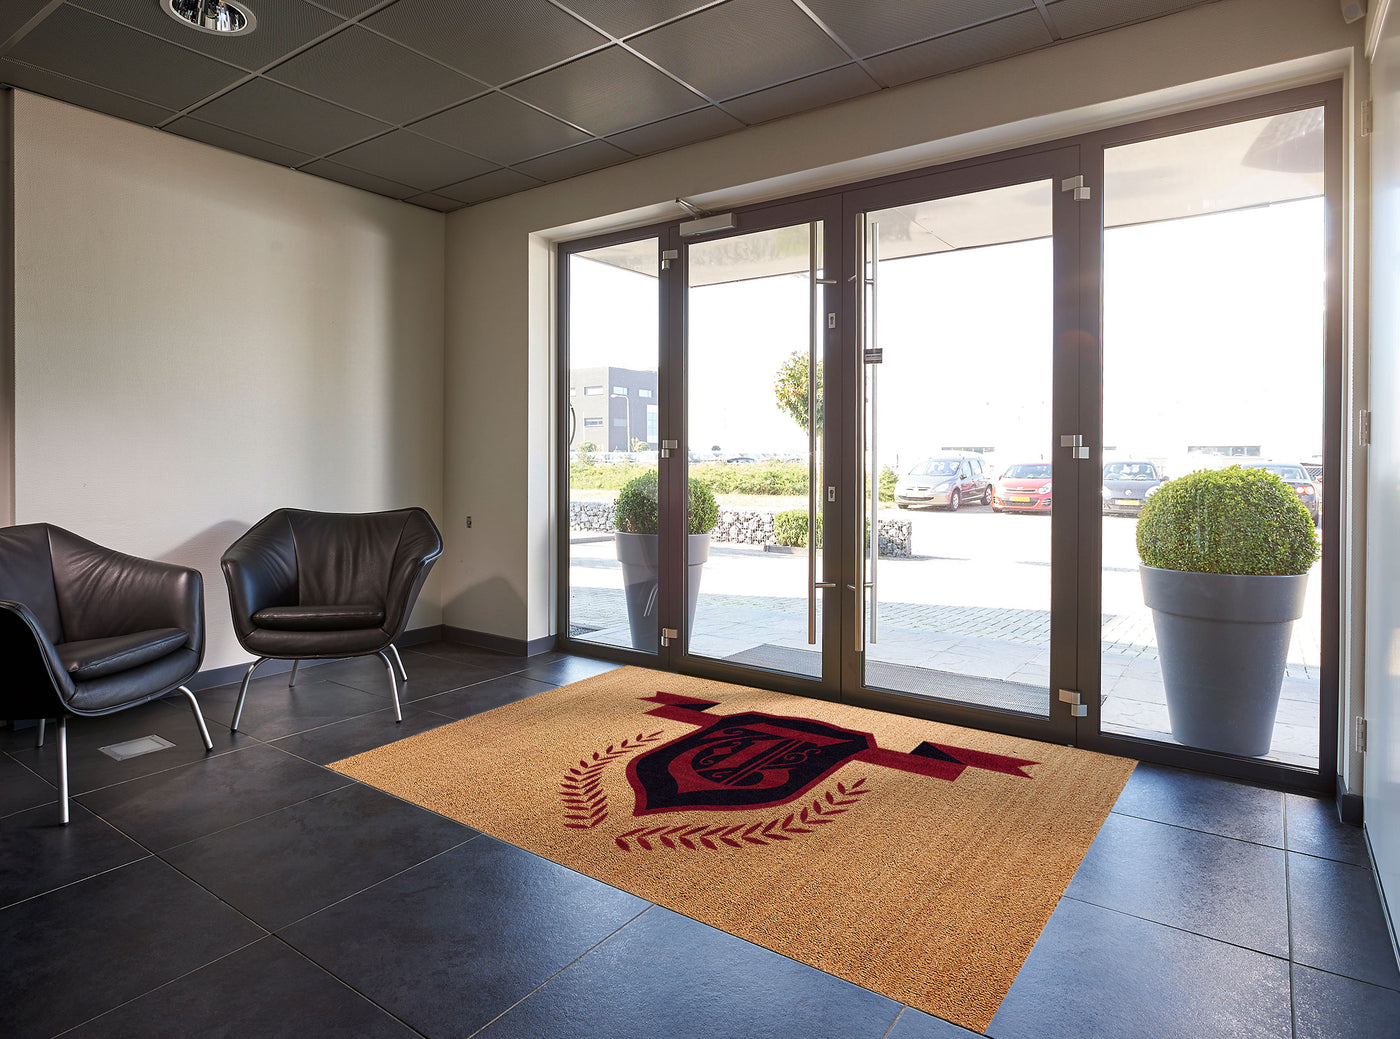 Coco Doormat - Custom Logo Floor Mat – Custom Logo Door Mats